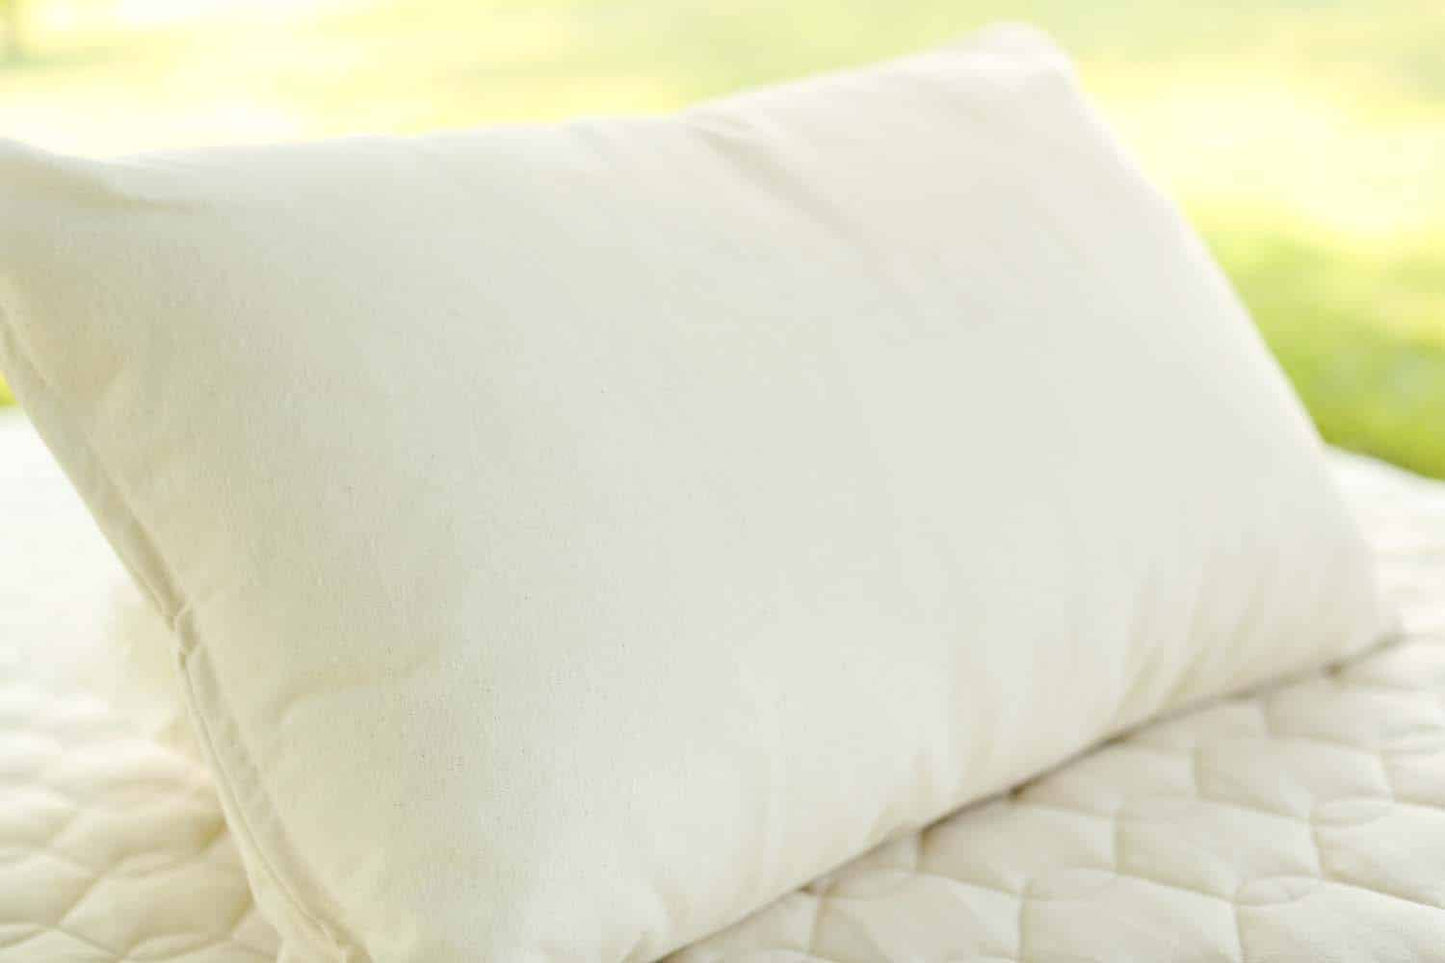 Queen Savvy Rest Organic Soft Kapok Pillow